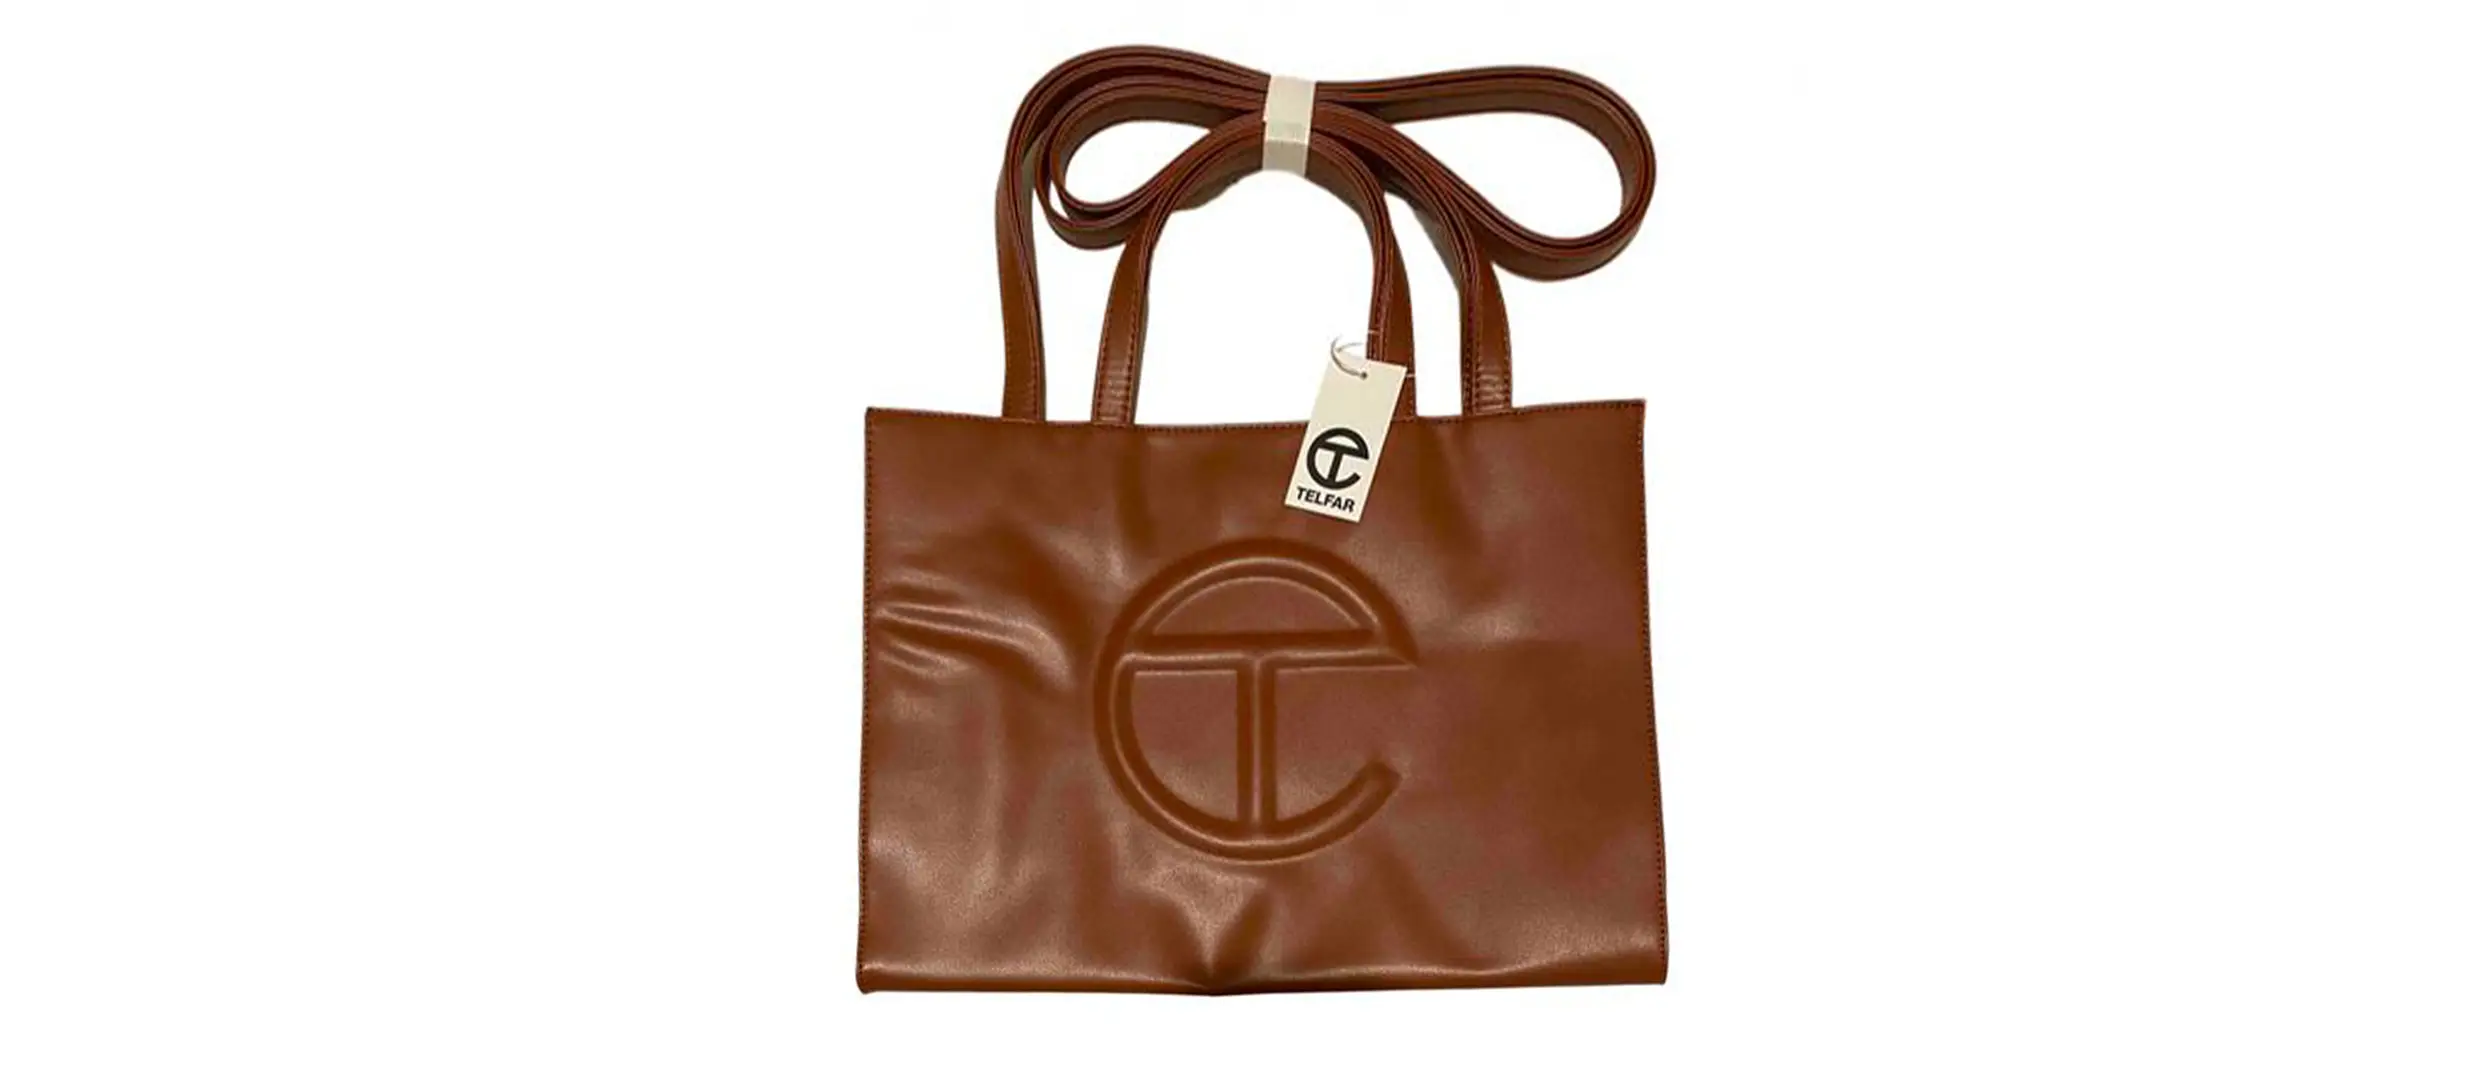 telfar-handbag-in-camel-leather.jpg